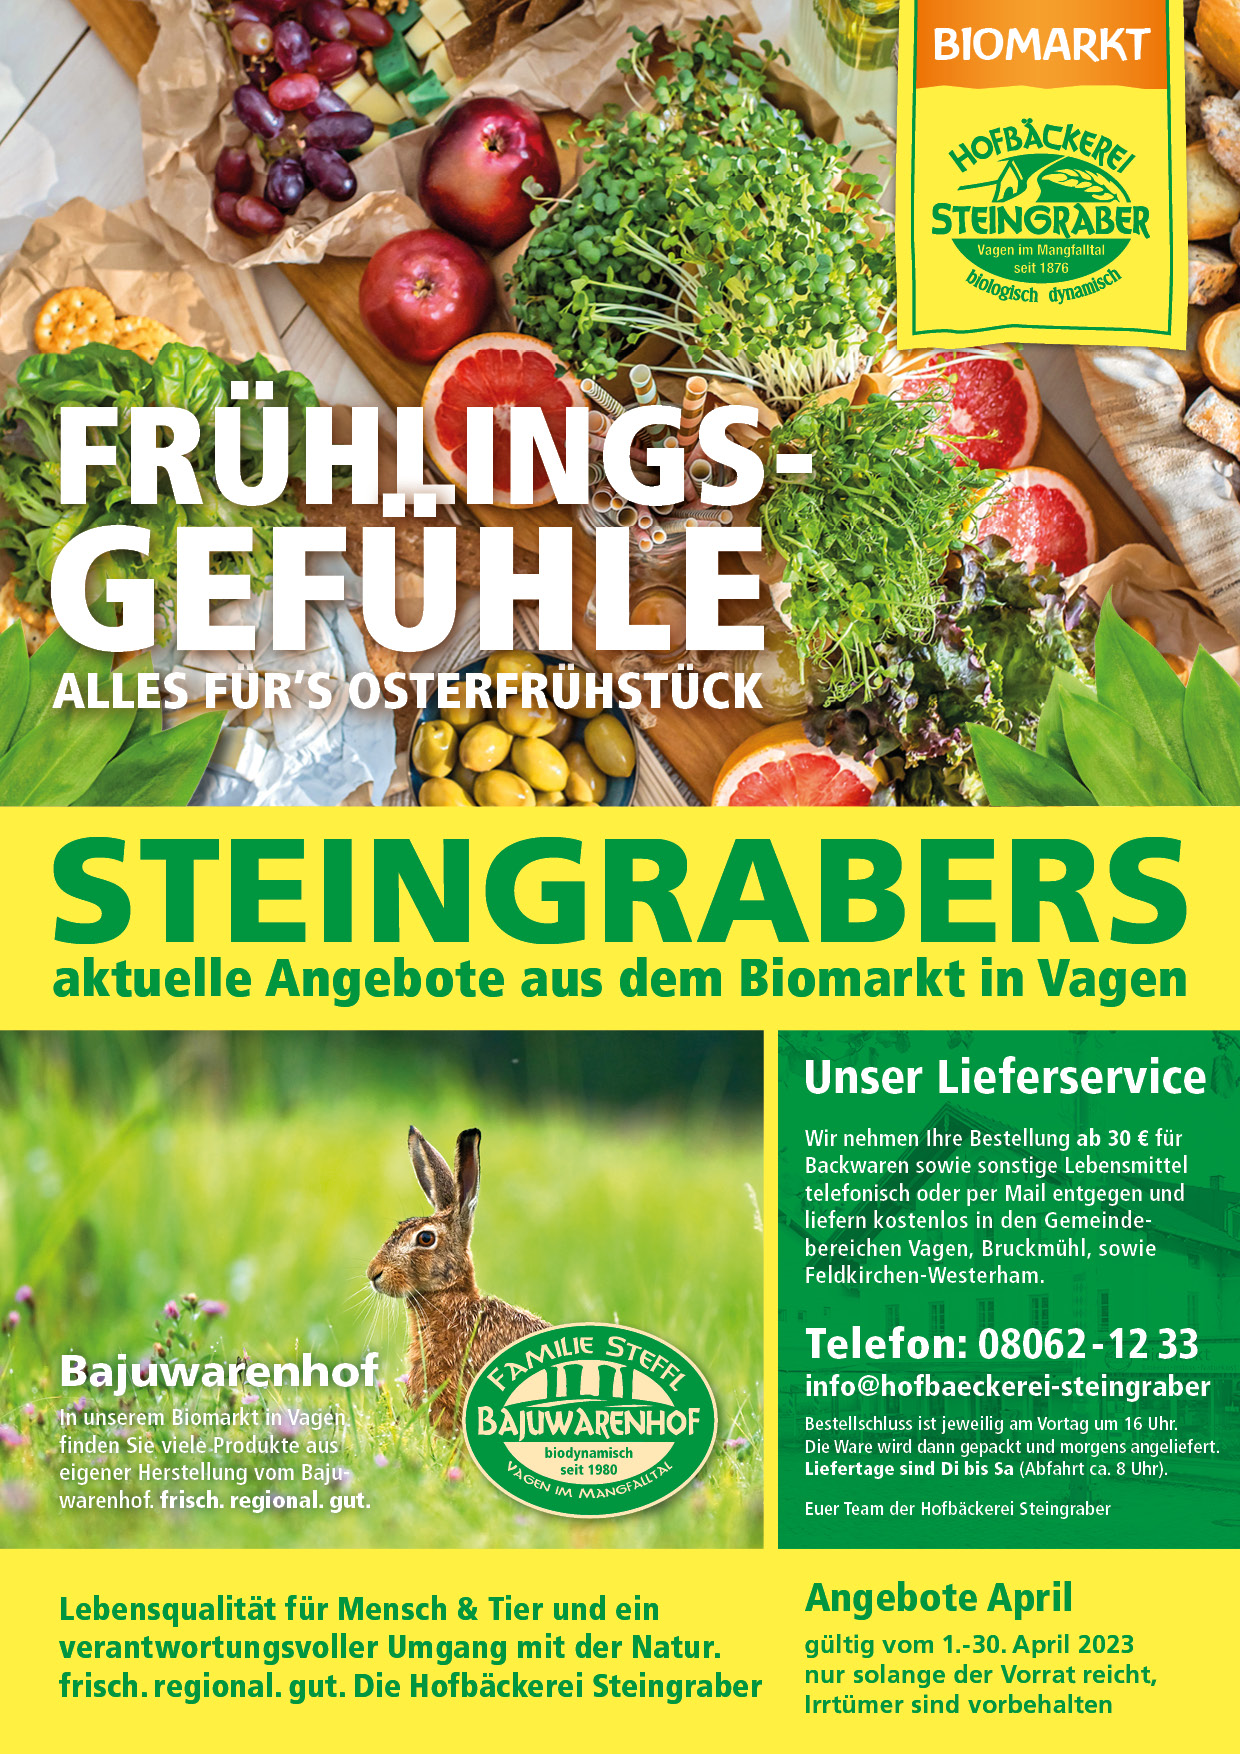 Steingraber Angebot A4 April 2023 1